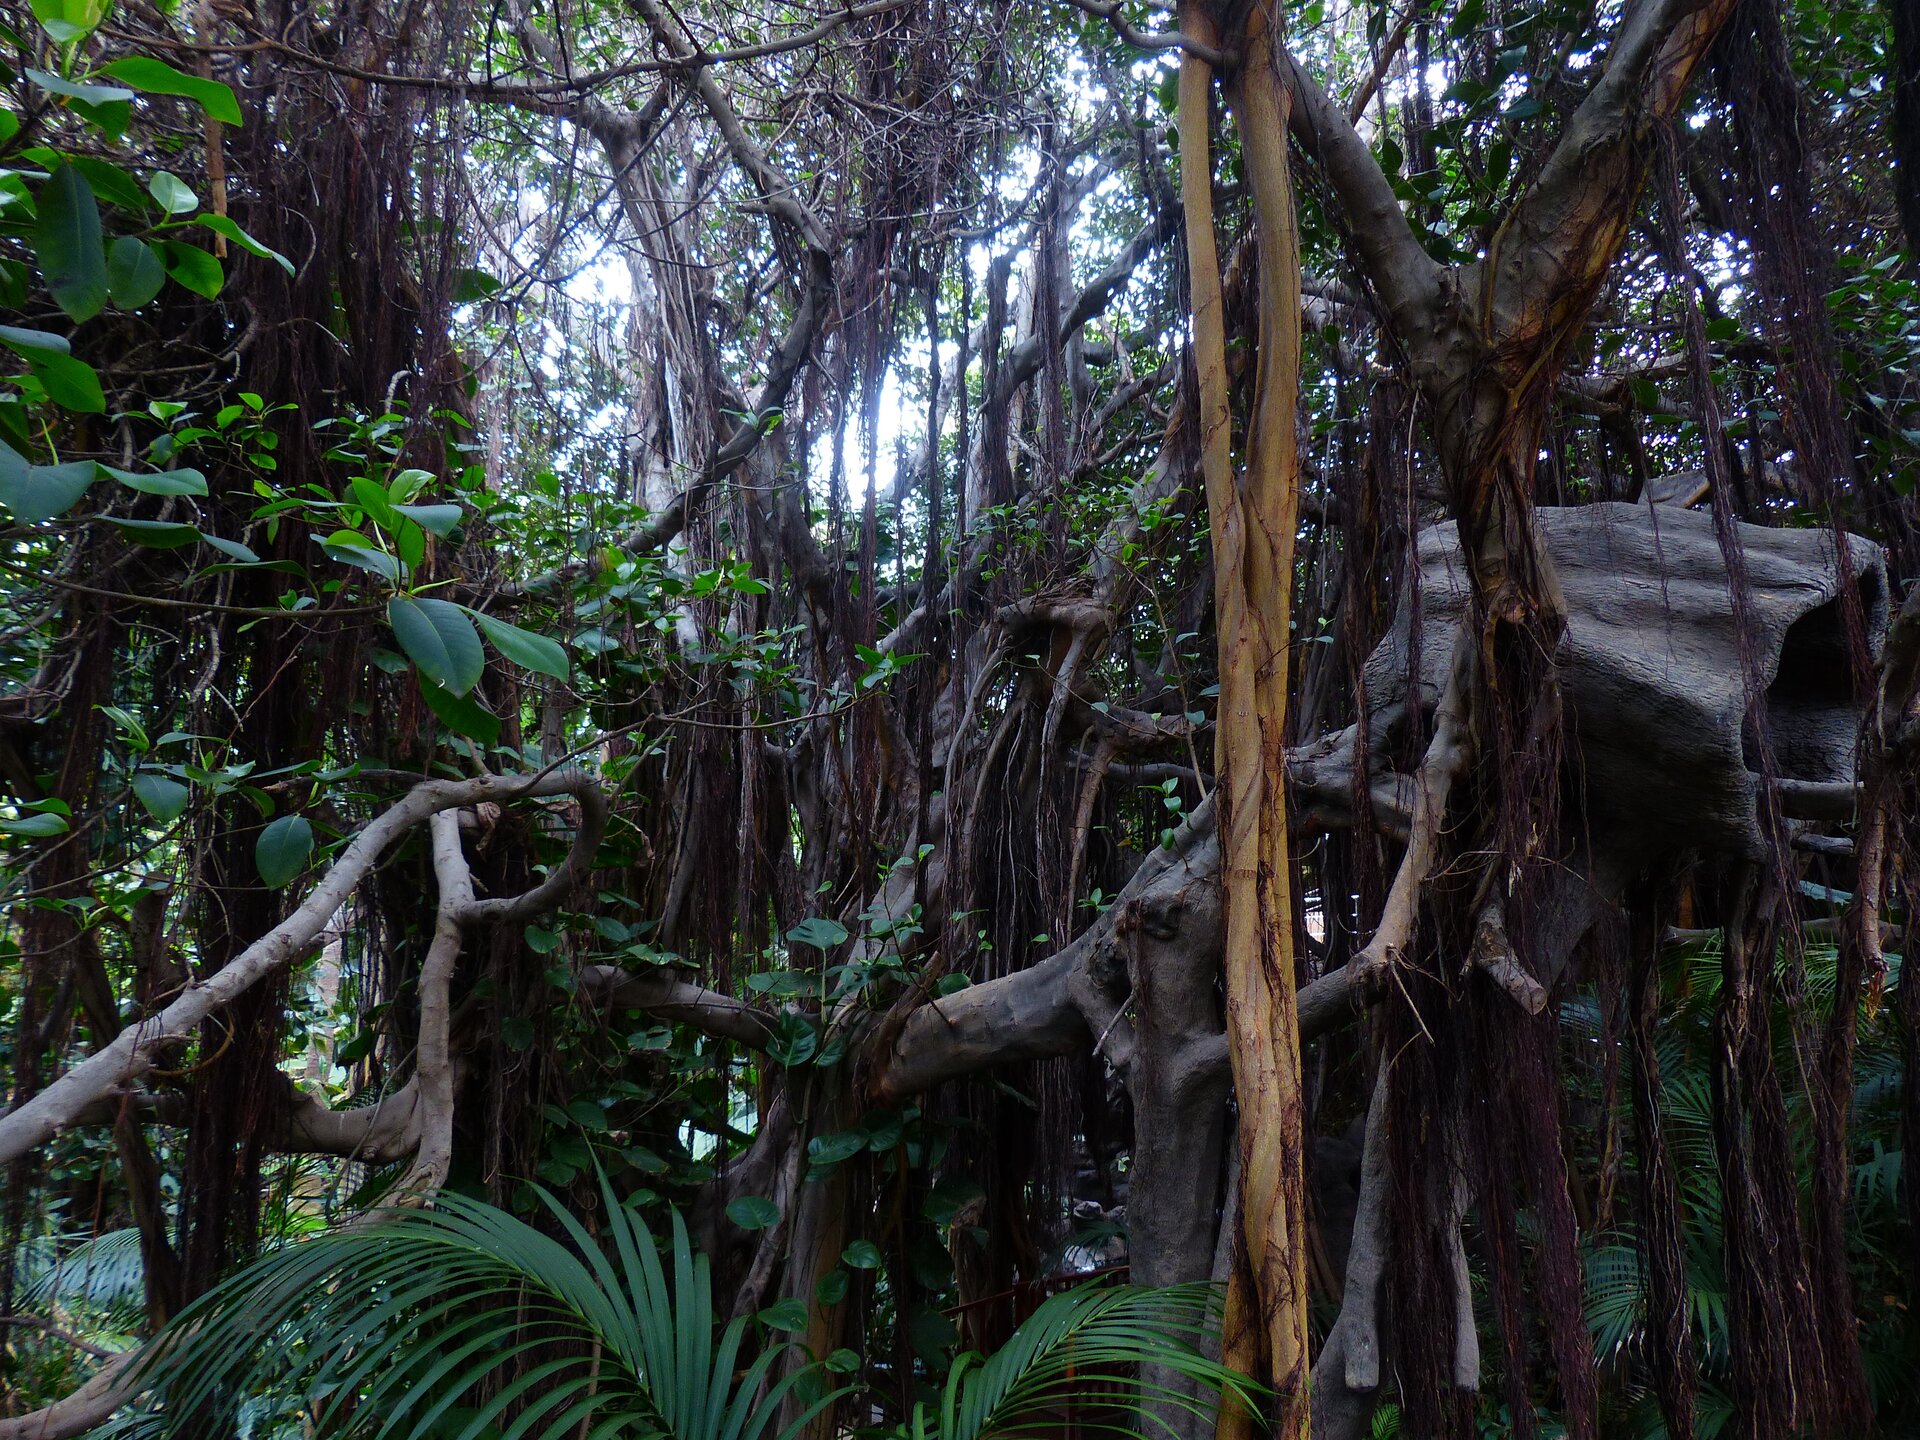 Fotografia trzecia prezentuje średnie piętro lasu równikowego, widoczne liany zwisające z drzew. Las jest gęsto porośnięty roślinami i panuje w nim półmrok.